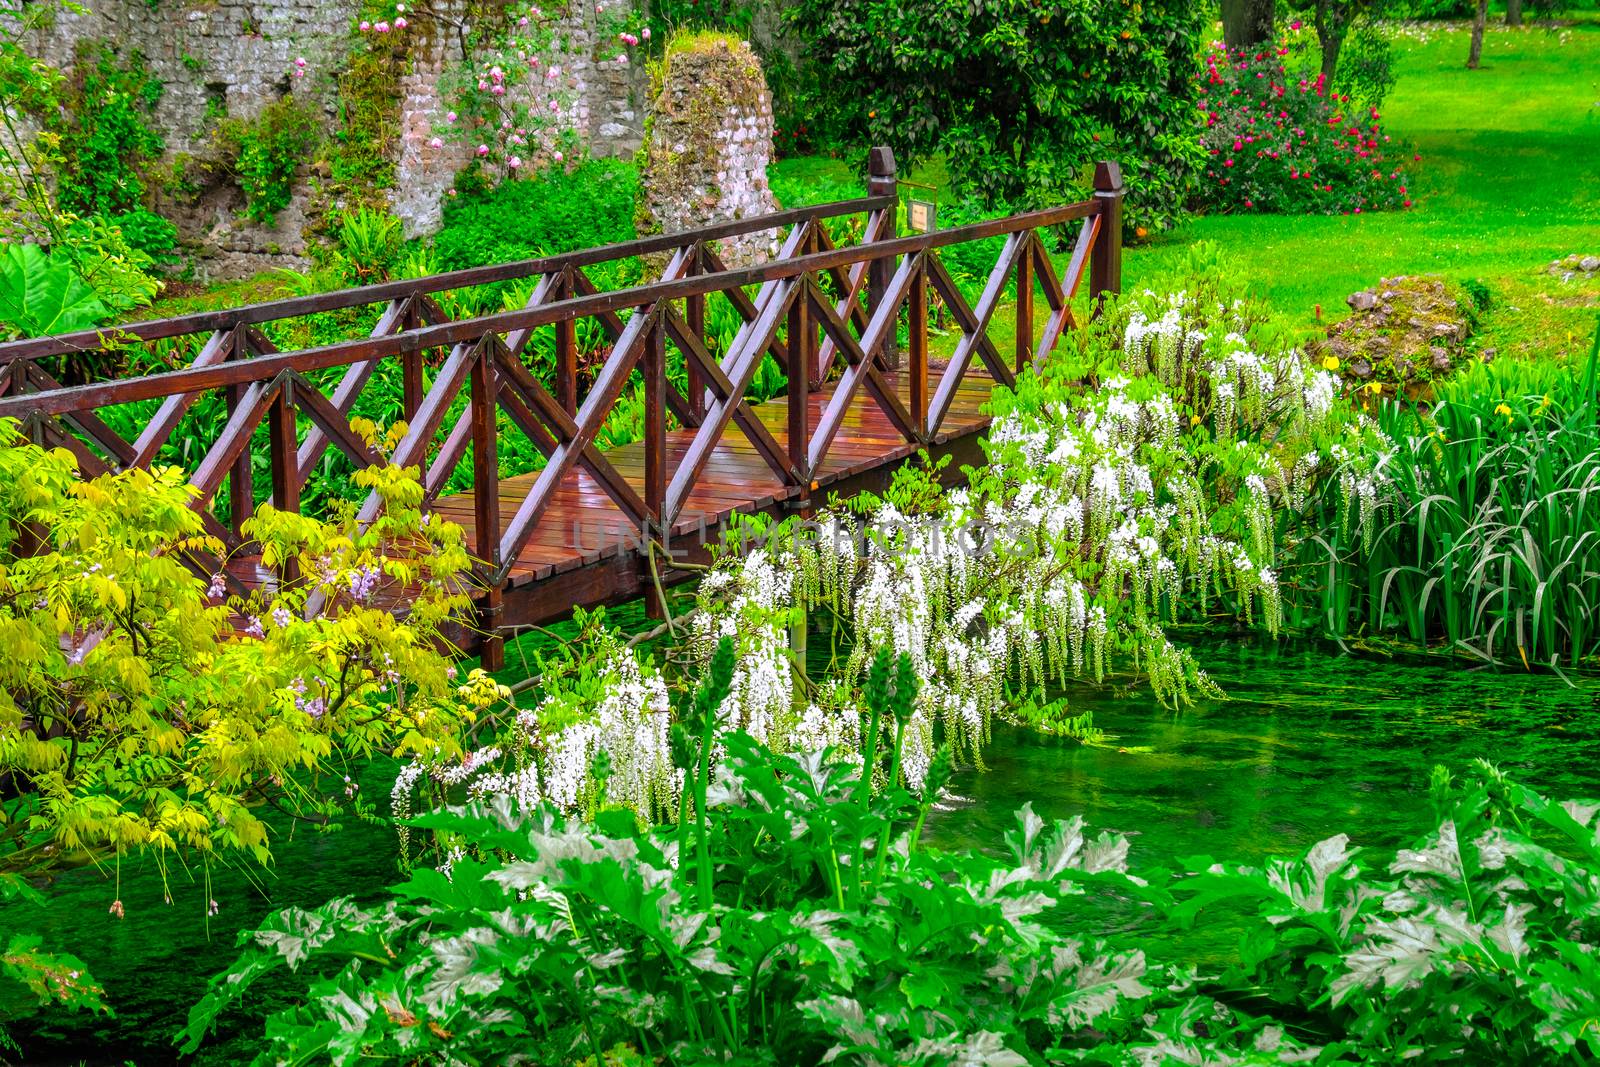 fairy tale bridge vivid green river wooden full of flowers in ornamental garden .